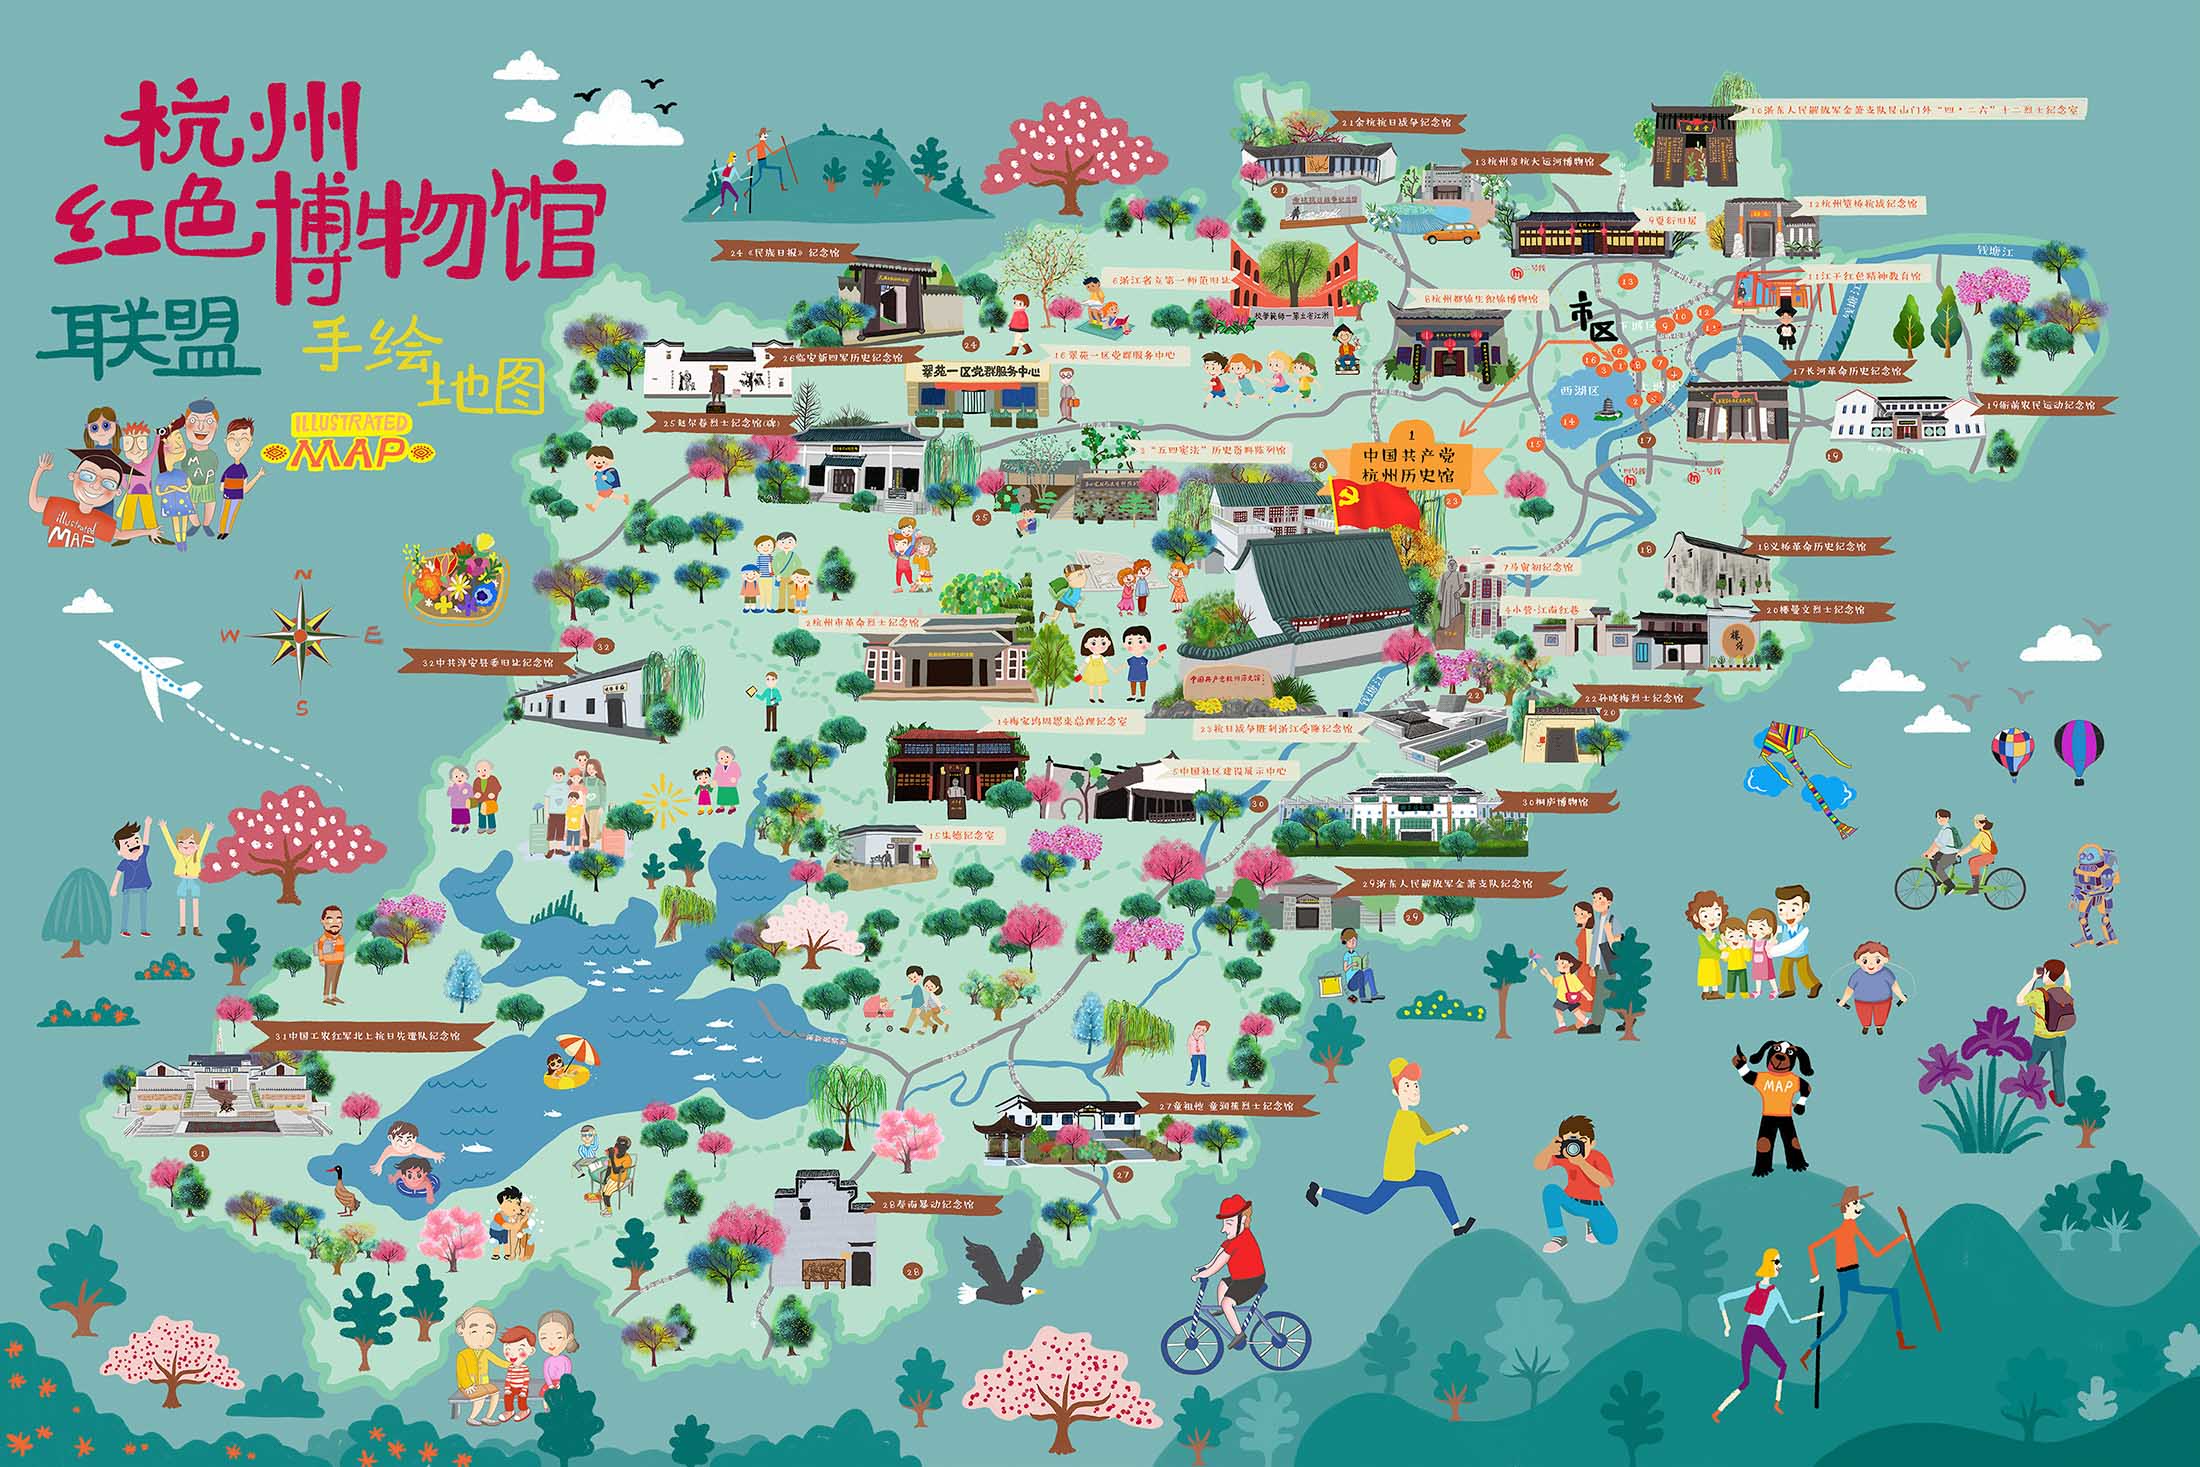 延川手绘地图与科技的完美结合 